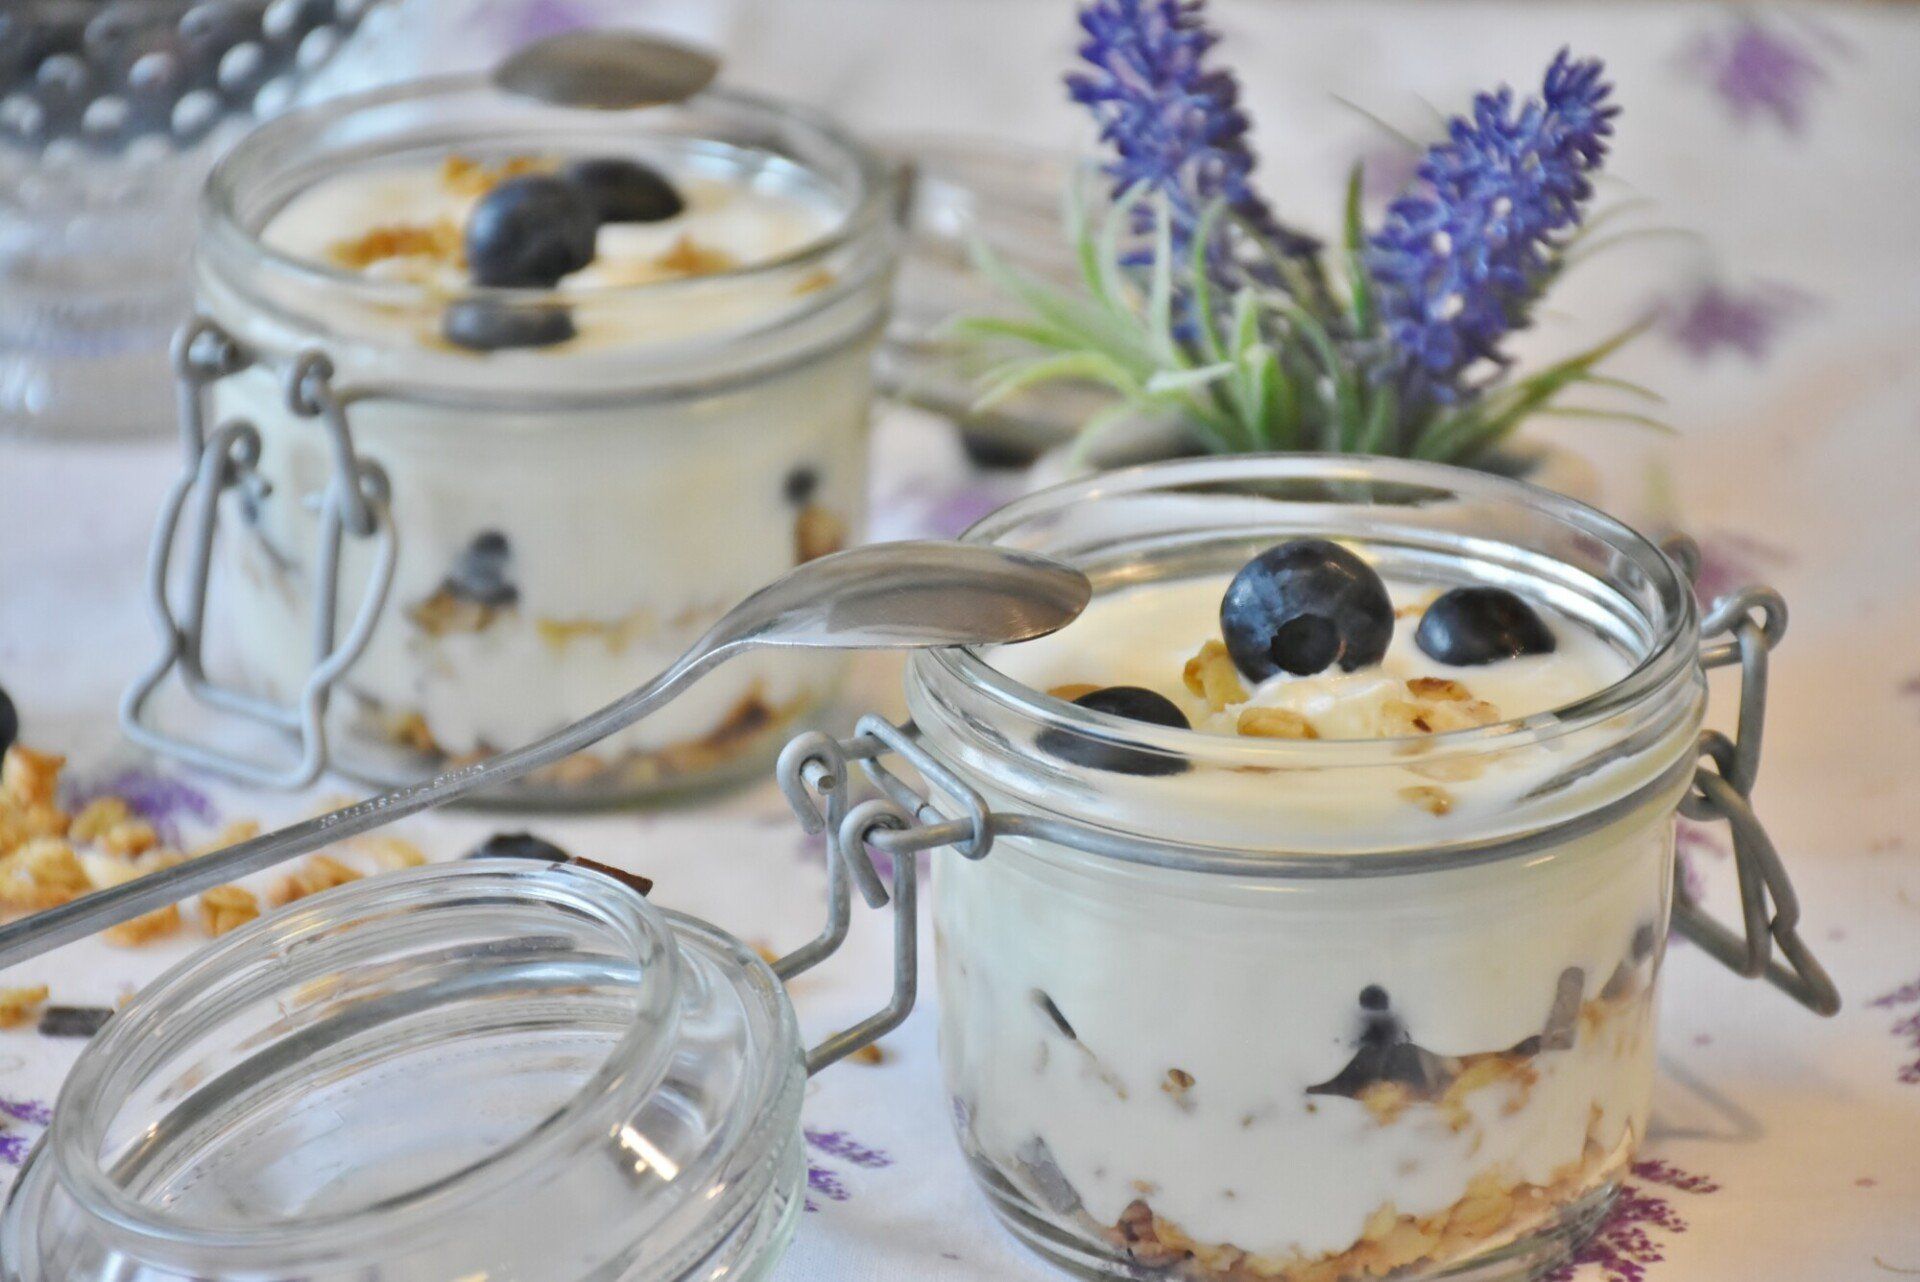 Healthy Vegan Snack - Yogurt with Blueberries